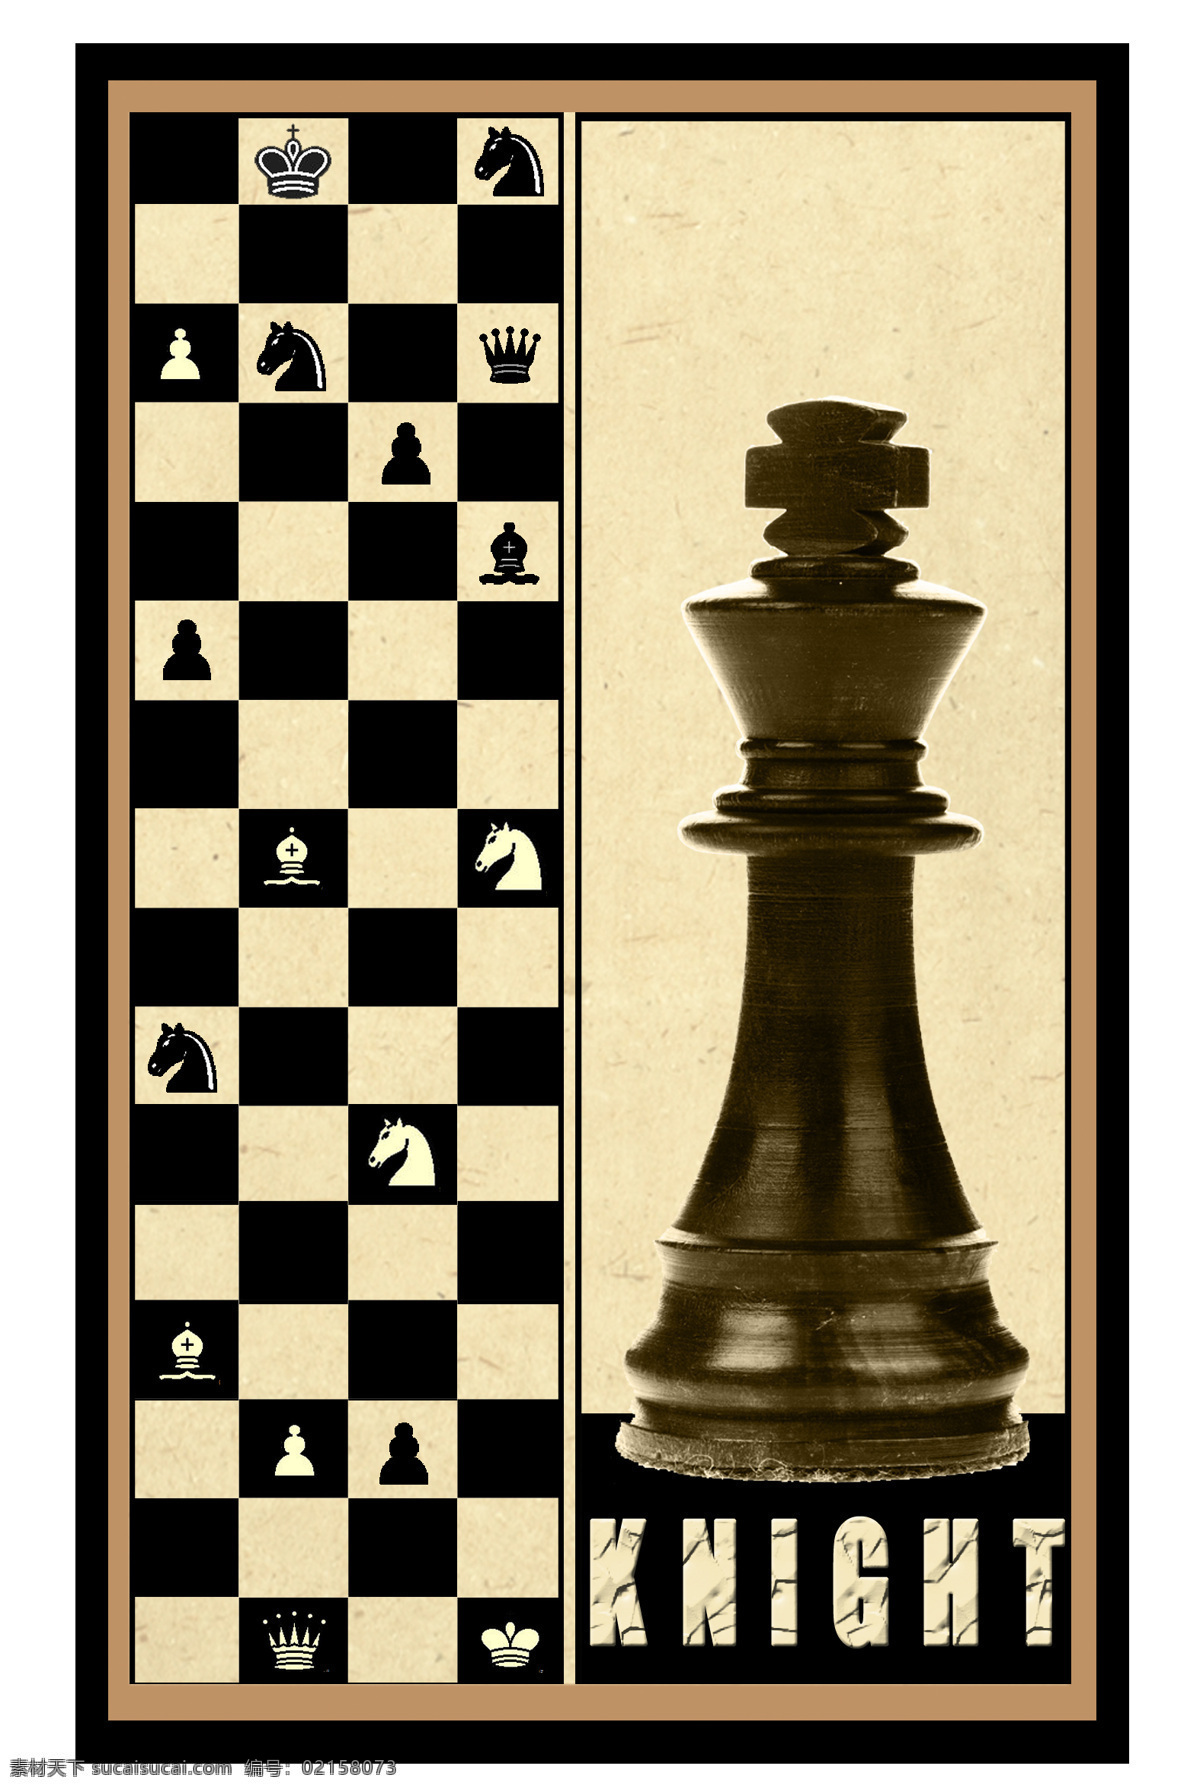 国际象棋 装饰画 无 框 画 时尚 棋盘 皇后 国王 花纹 边框 无框画 红色 雕塑 铜塑 骑士 环境设计